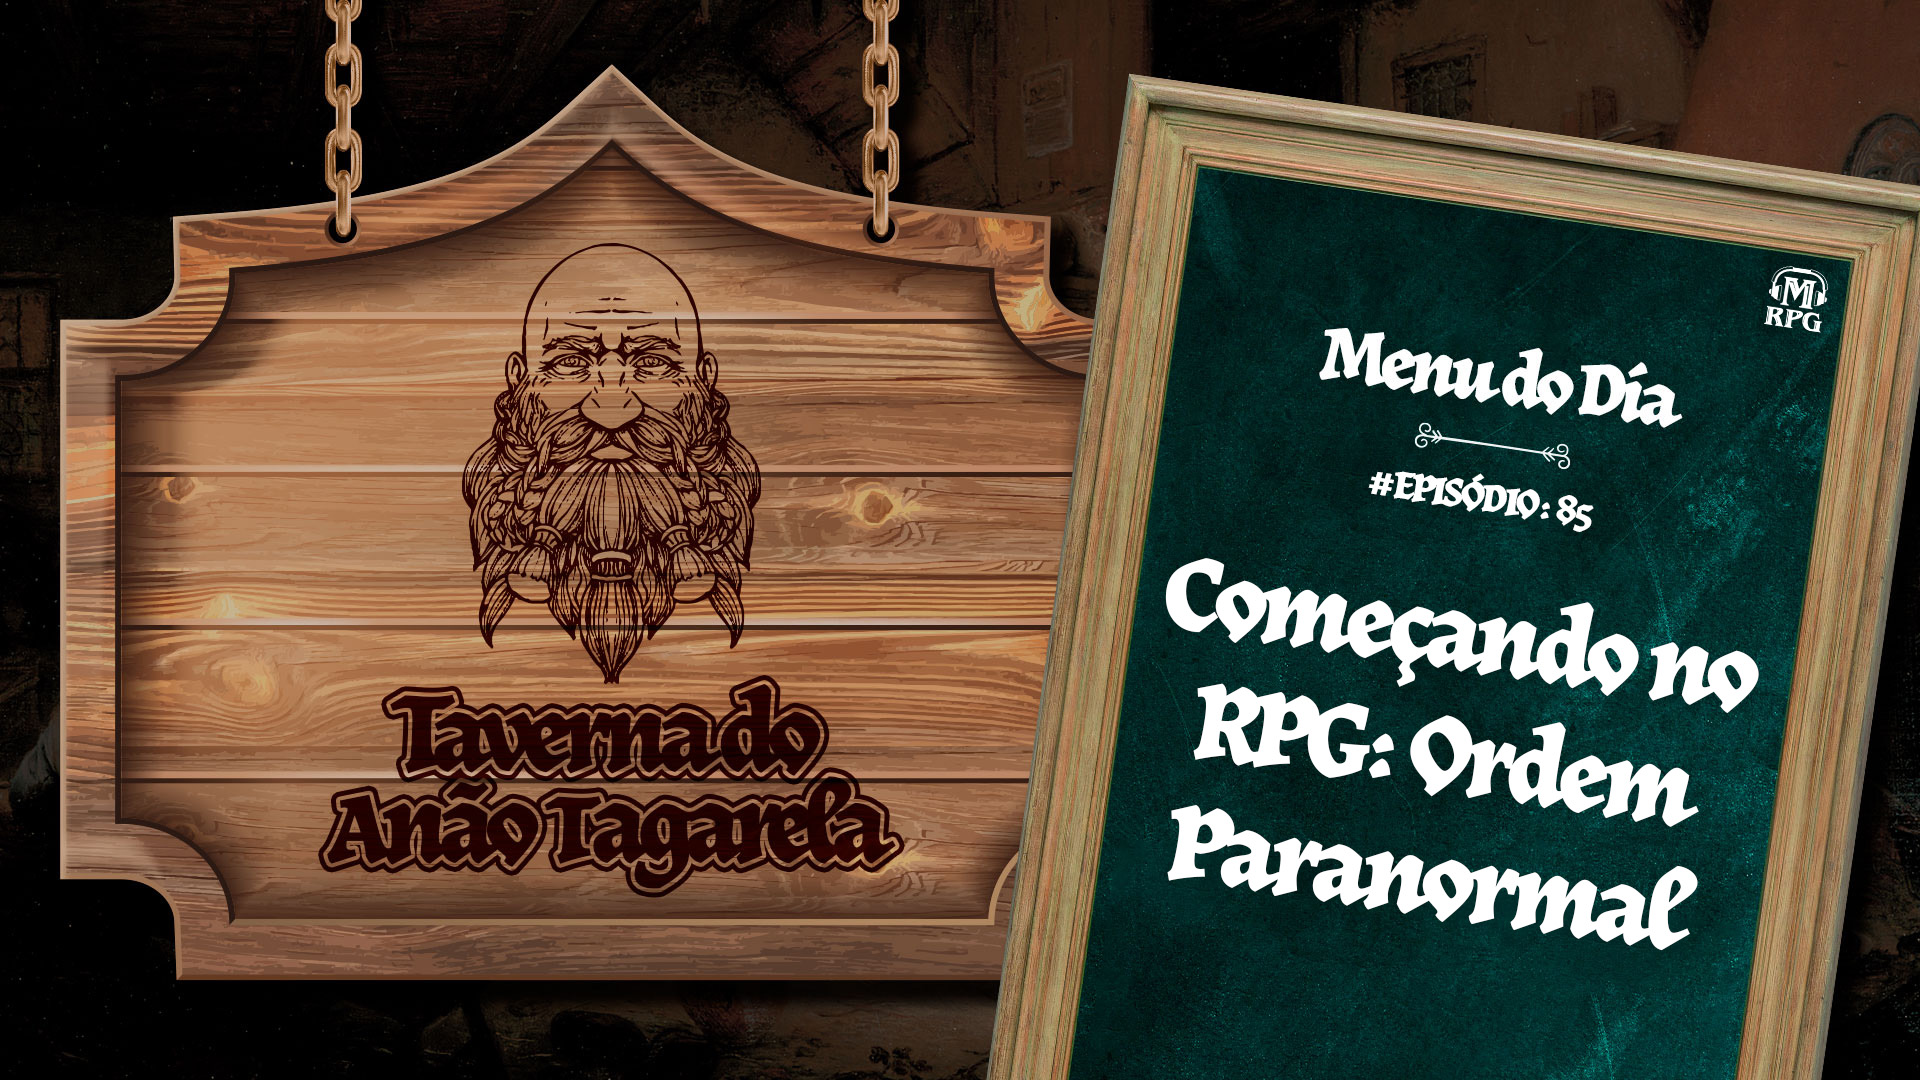 Começando no RPG: Ordem Paranormal – Taverna do Anão Tagarela #85